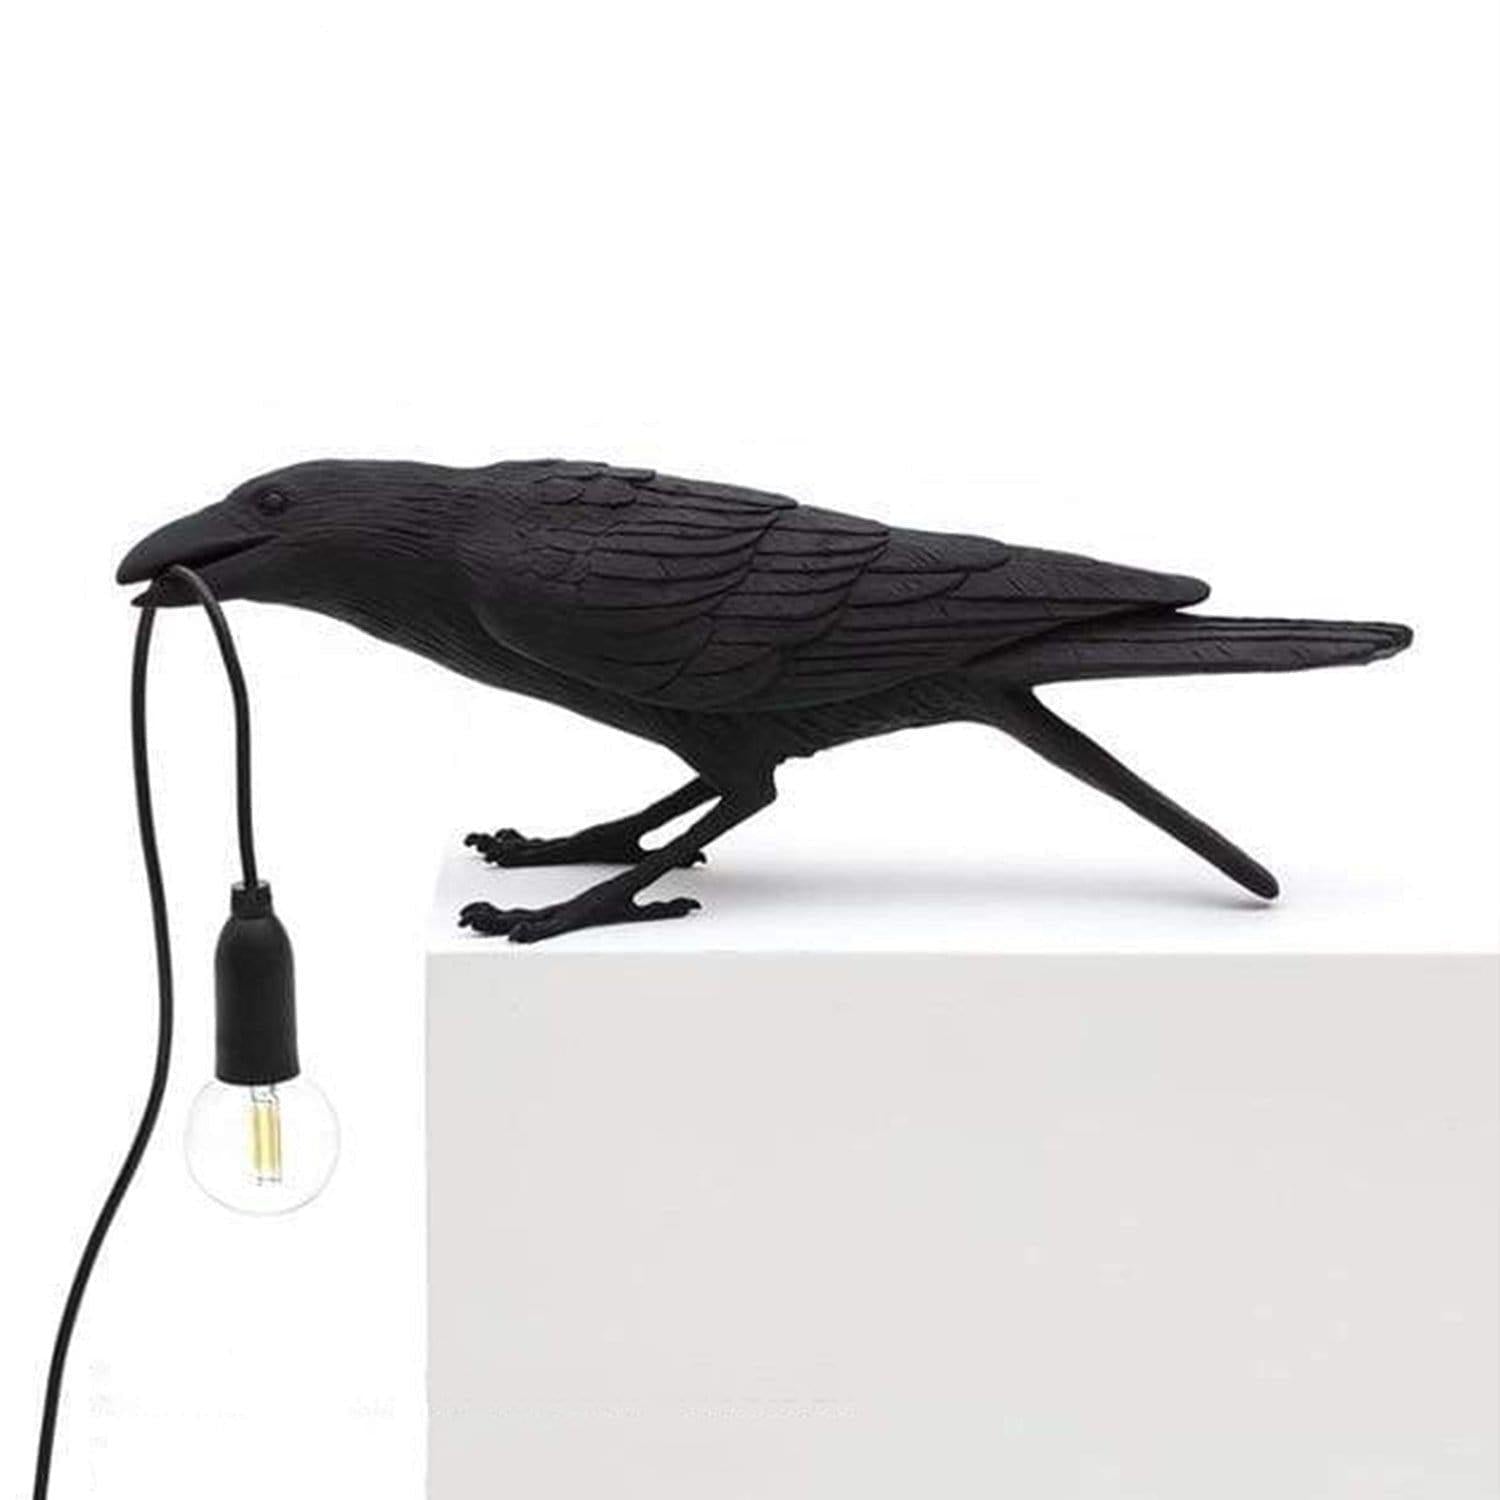 Gianluca Bird Lamp - b11house Lamps